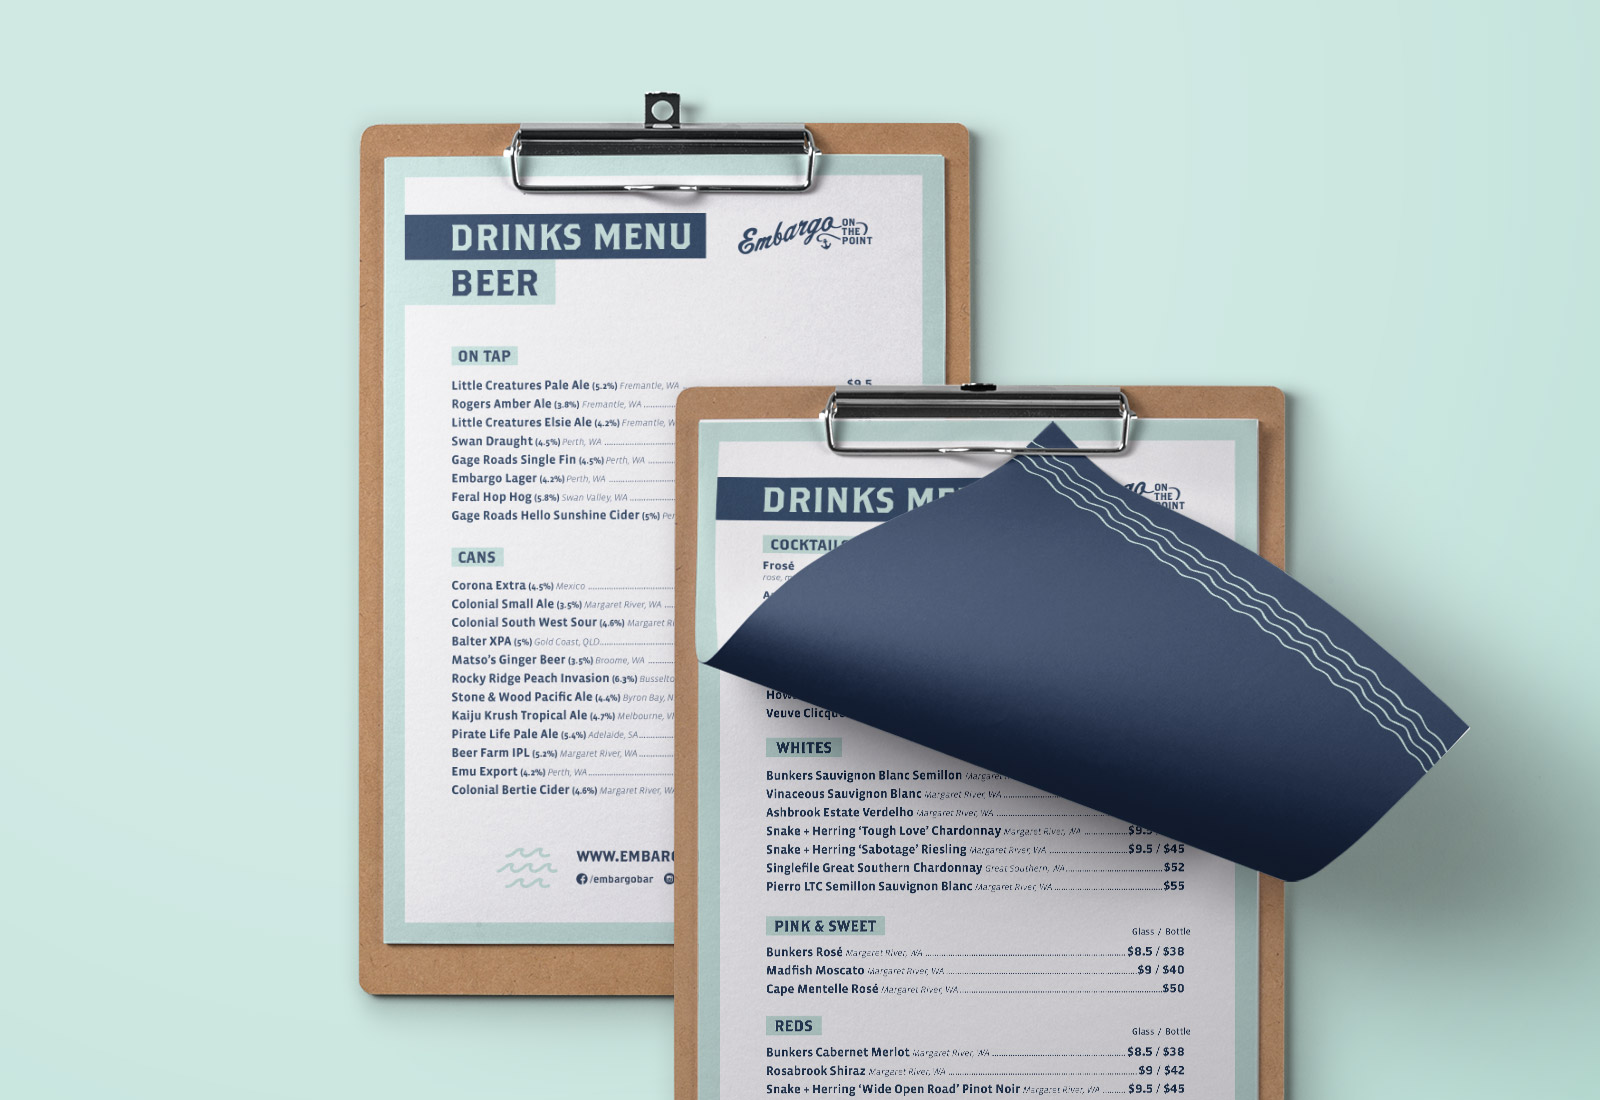 Embargo bar hospitality menu design